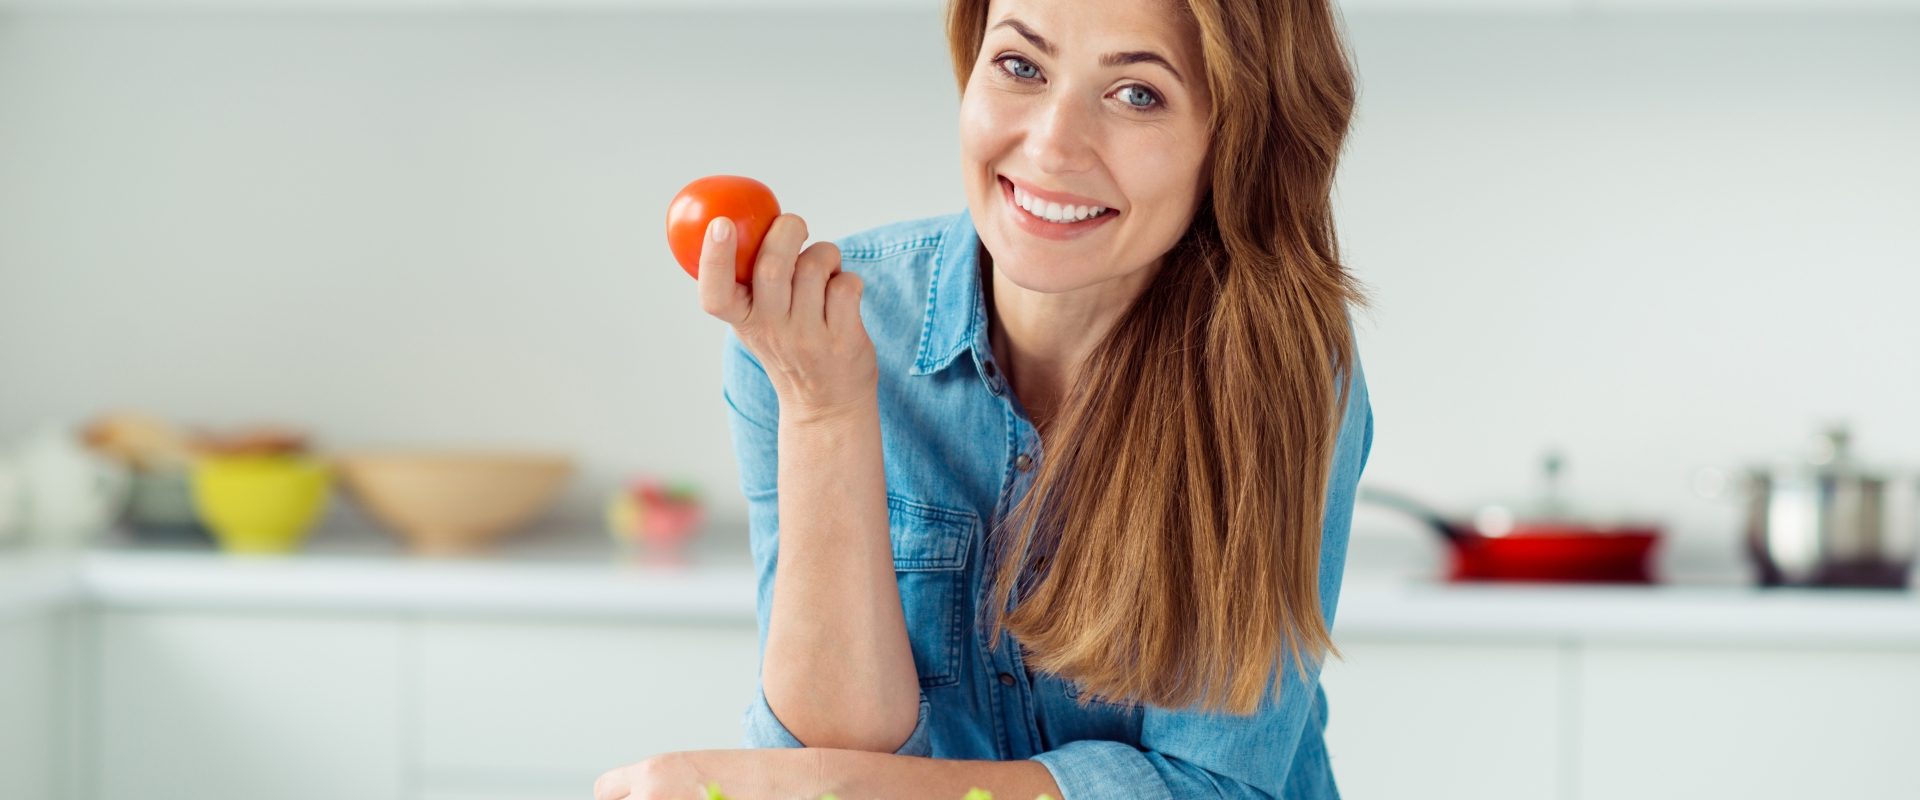 Zakwaszenie organizmu - czym jest i co warto o nim wiedzieć? Kobieta opiera się łokciami o blat kuchenny, trzymając w ręku pomidora.